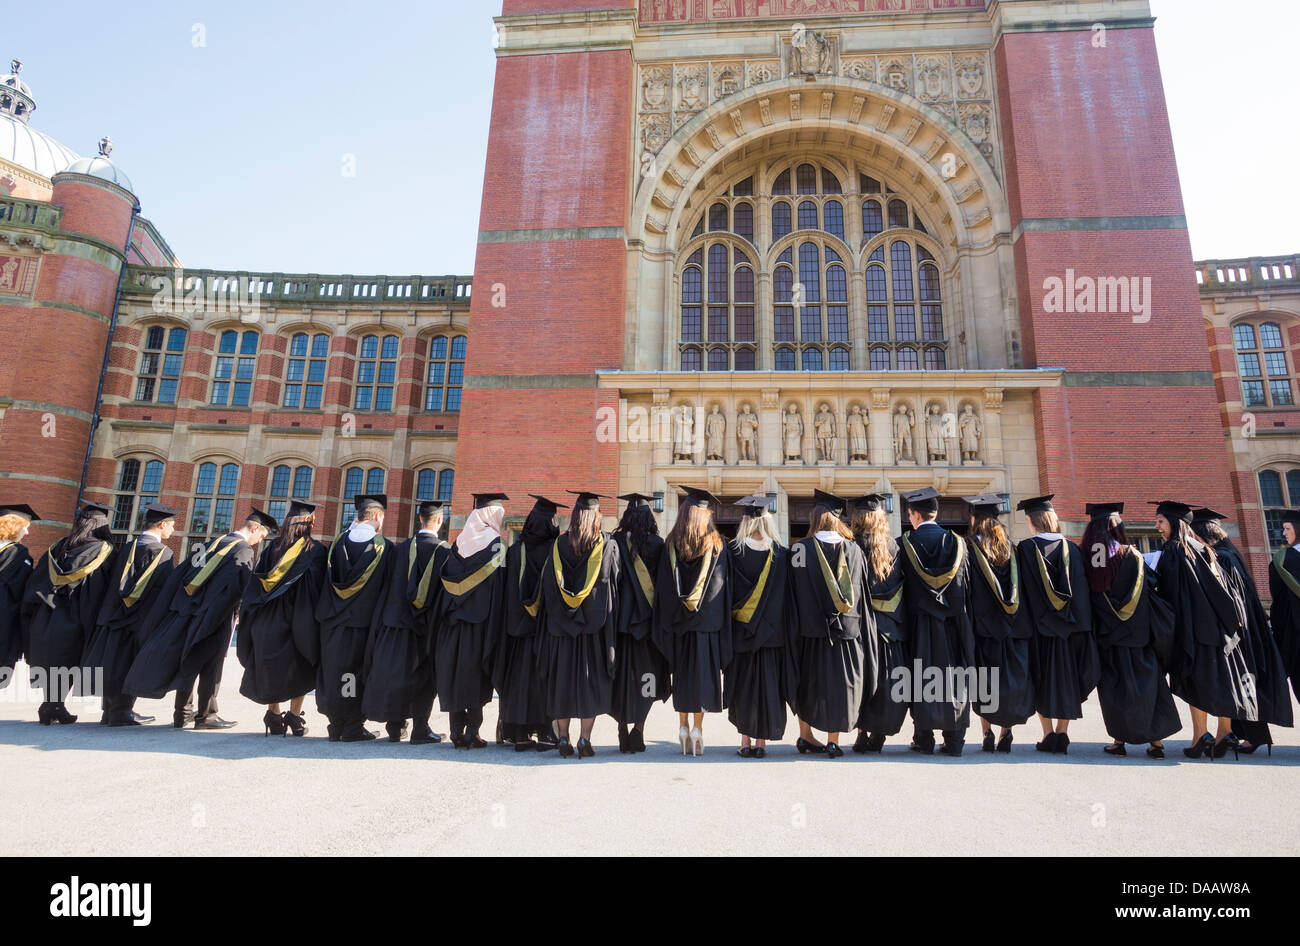 Les élèves de l'alignement après une cérémonie de remise des diplômes à l'Université de Birmingham, UK, d'avoir leur photo prise. Banque D'Images